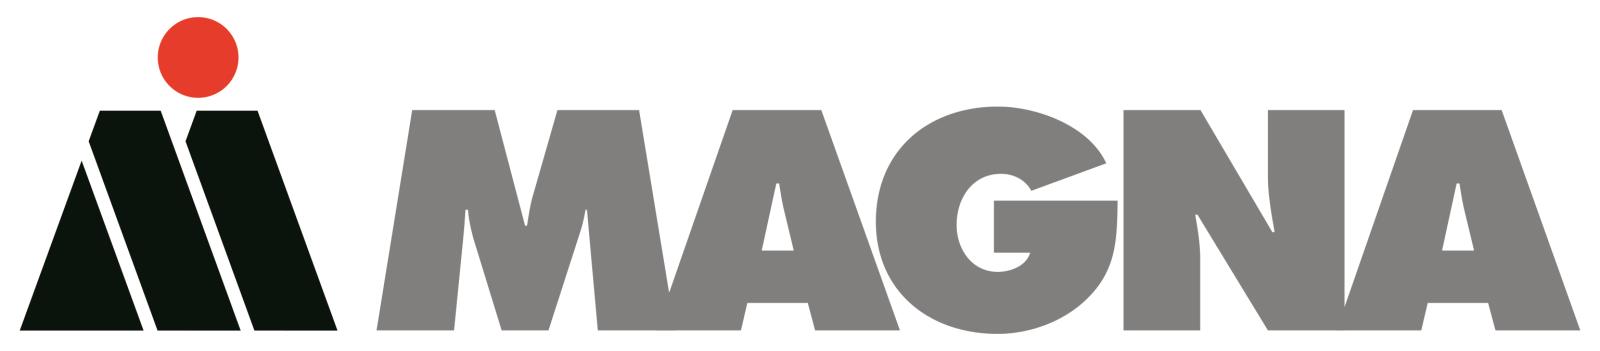 magna-logo-cymk-hr-v1.0.jpg